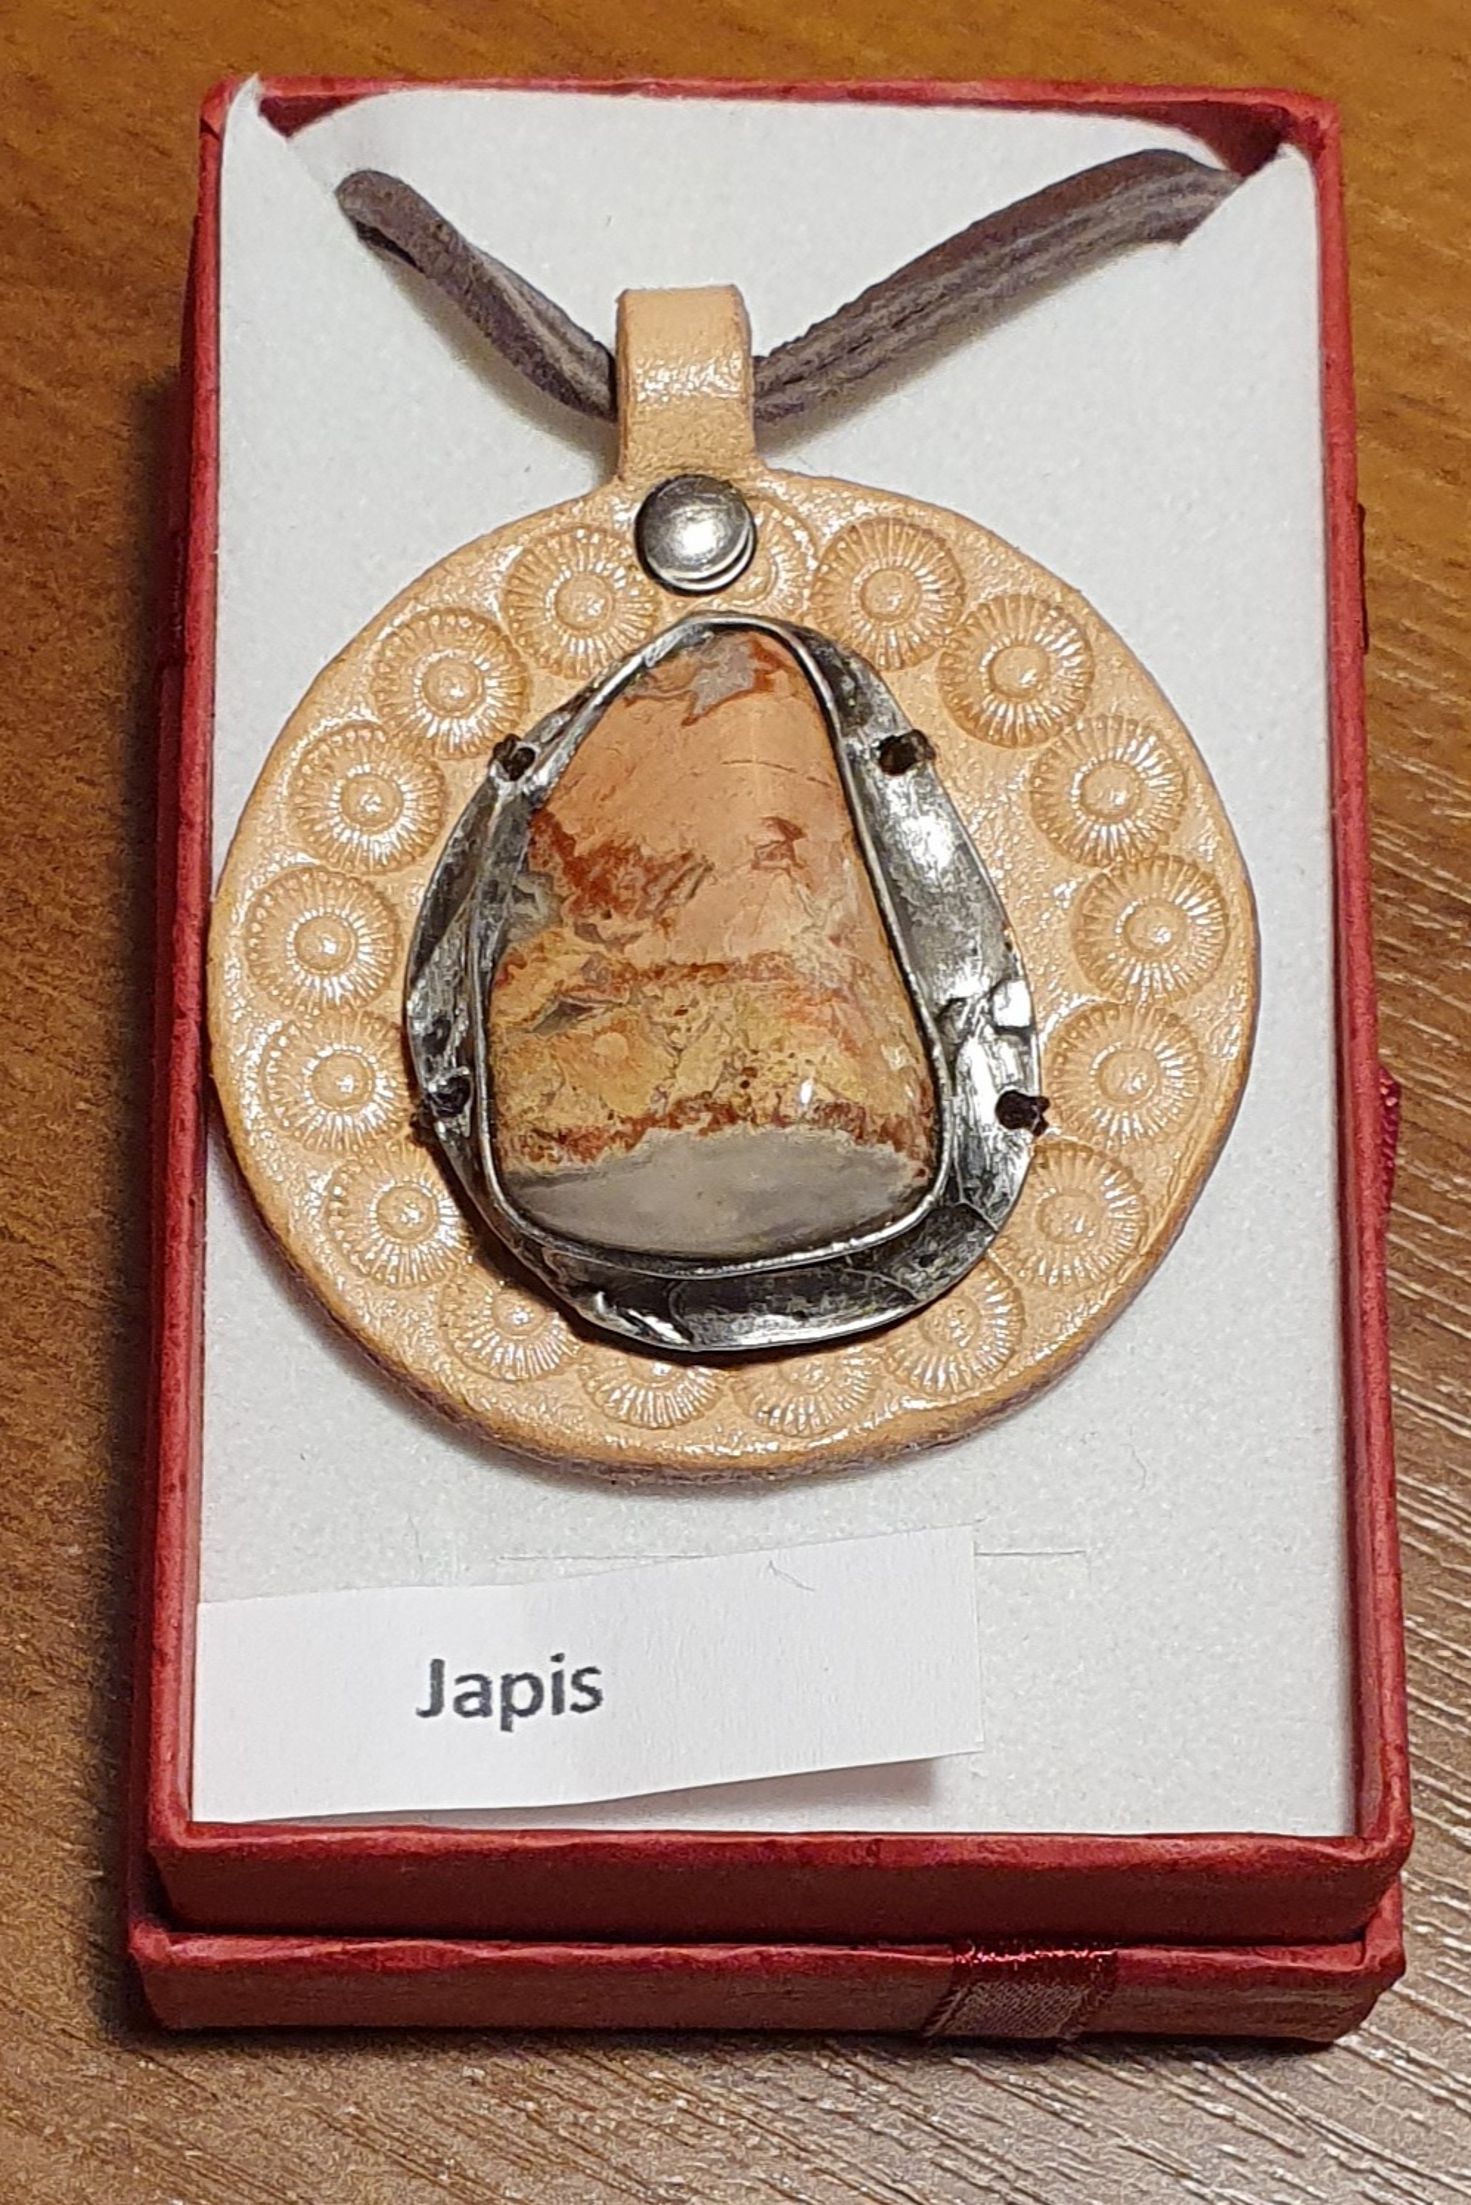 Náhrdelník - autorský  cínovaný šperk s Jaspisem na kůži(4,5x4cm), cena 600 Kč